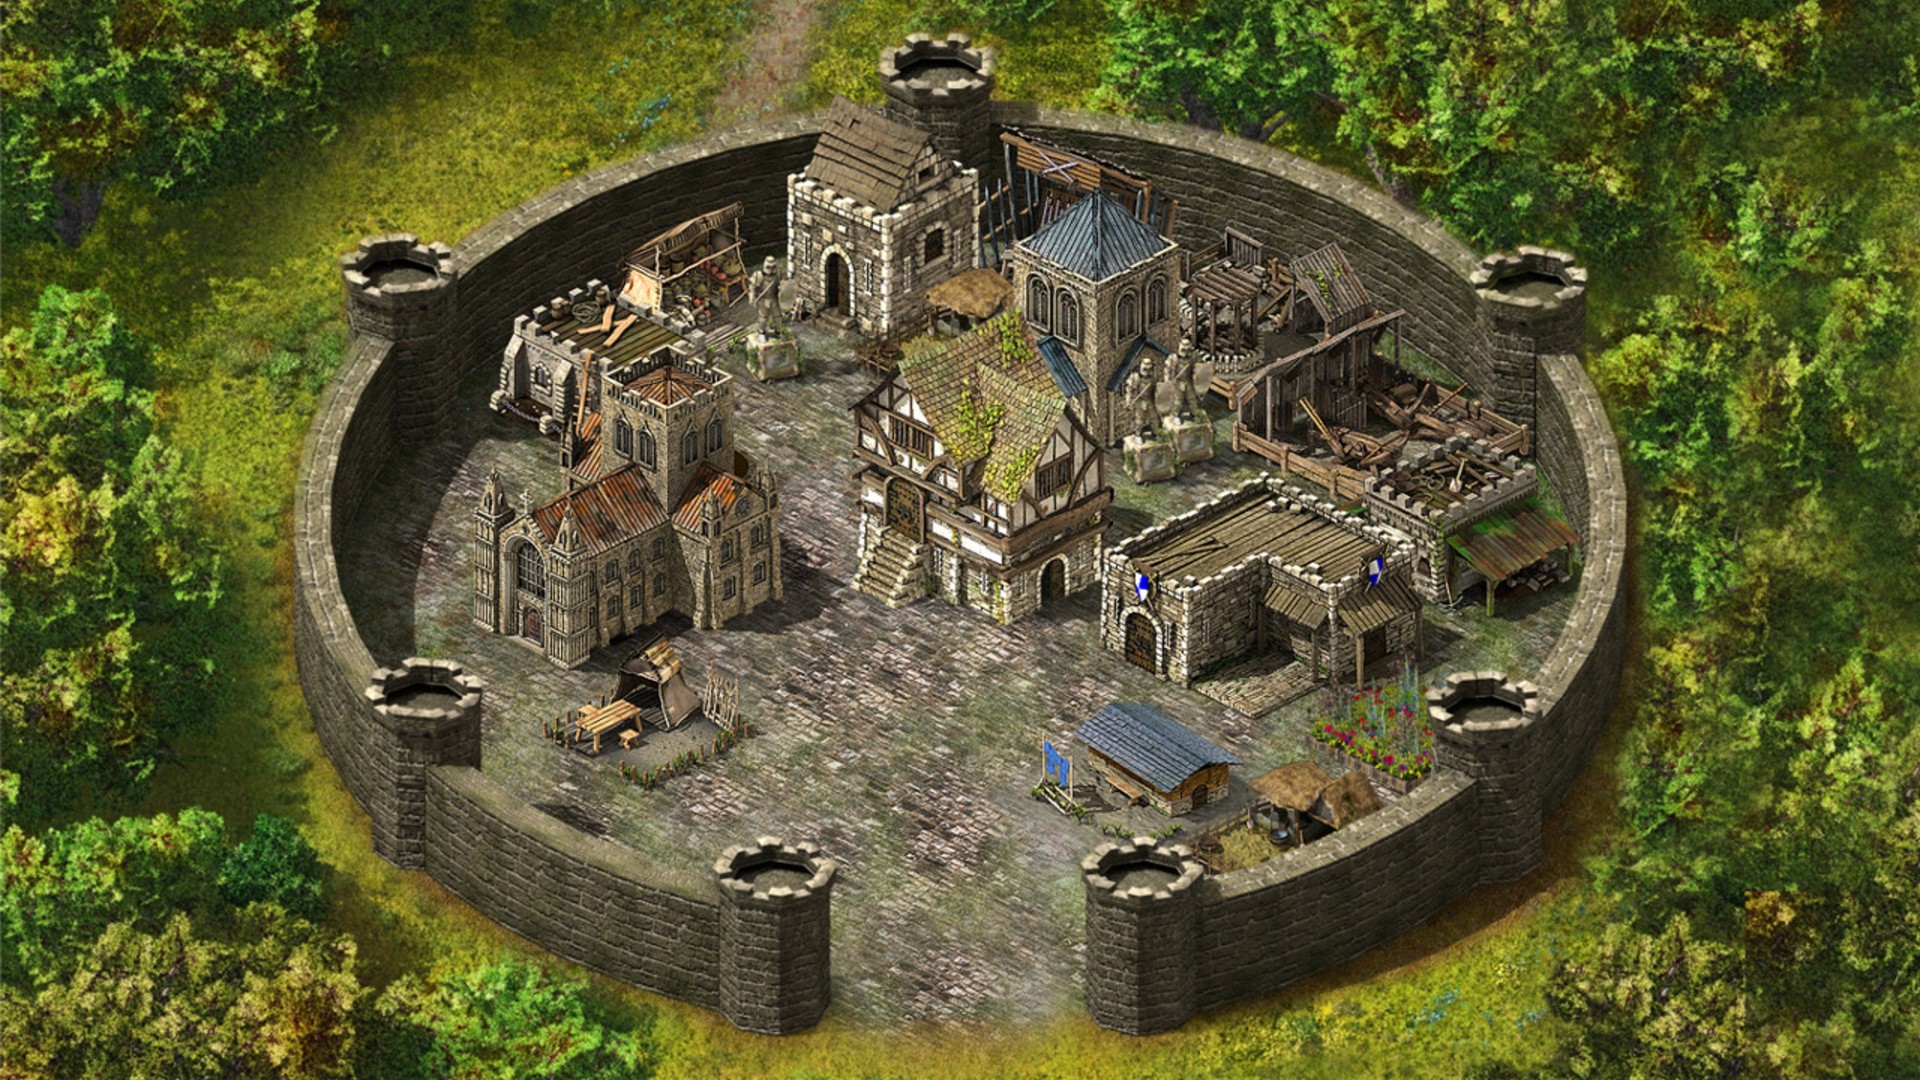 بازی های آنلاین: تصویر ساختمانهایی را در دیوارهای قلعه دایره ای در پادشاهی های دژ نشان می دهد